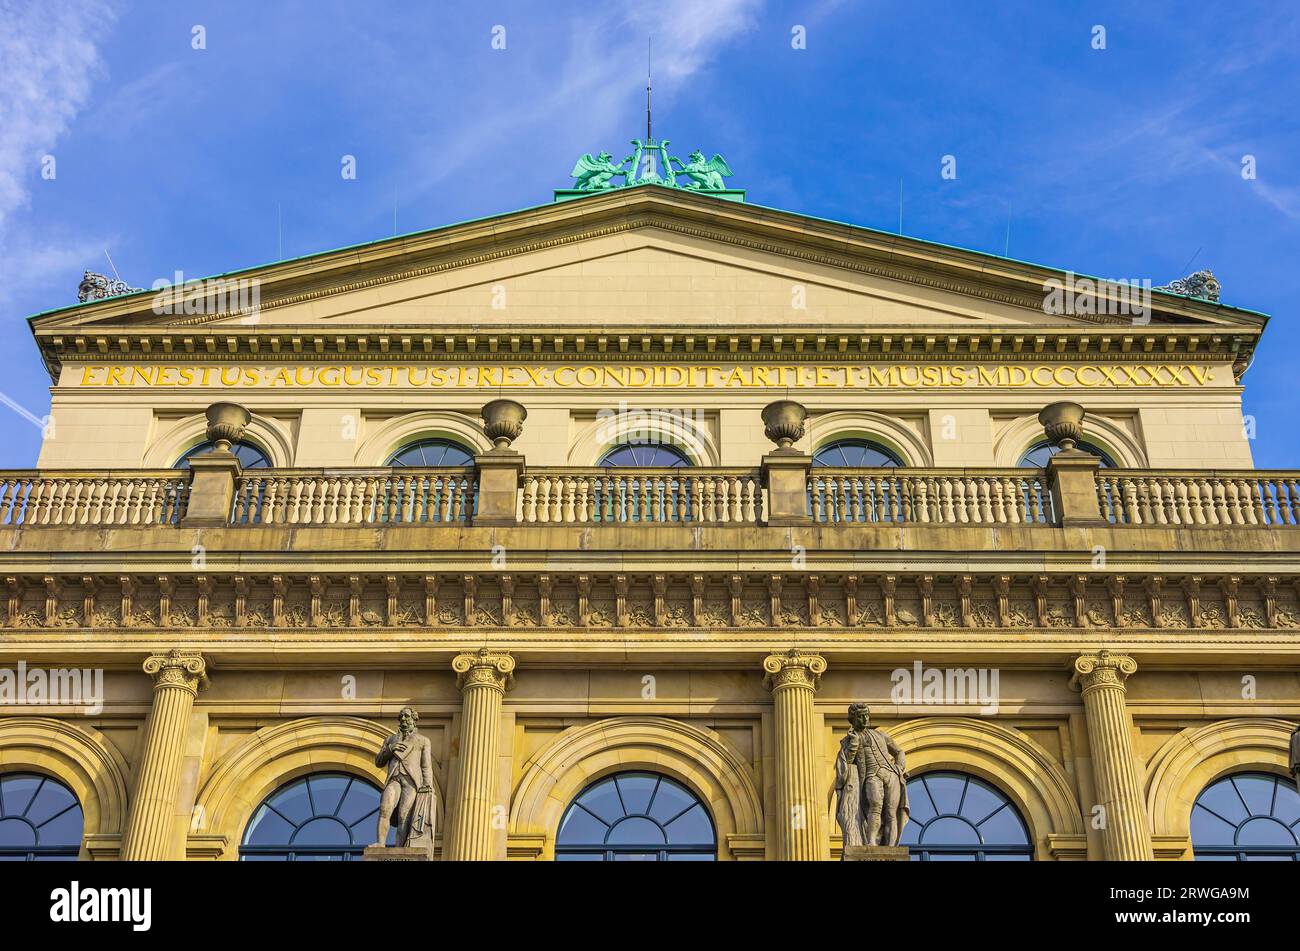 Opéra de Hanovre (Staatsoper Hannover) sur la place de l'Opéra, siège du Théâtre d'État de Basse-Saxe, Hanovre, Basse-Saxe, Allemagne, Europe. Banque D'Images